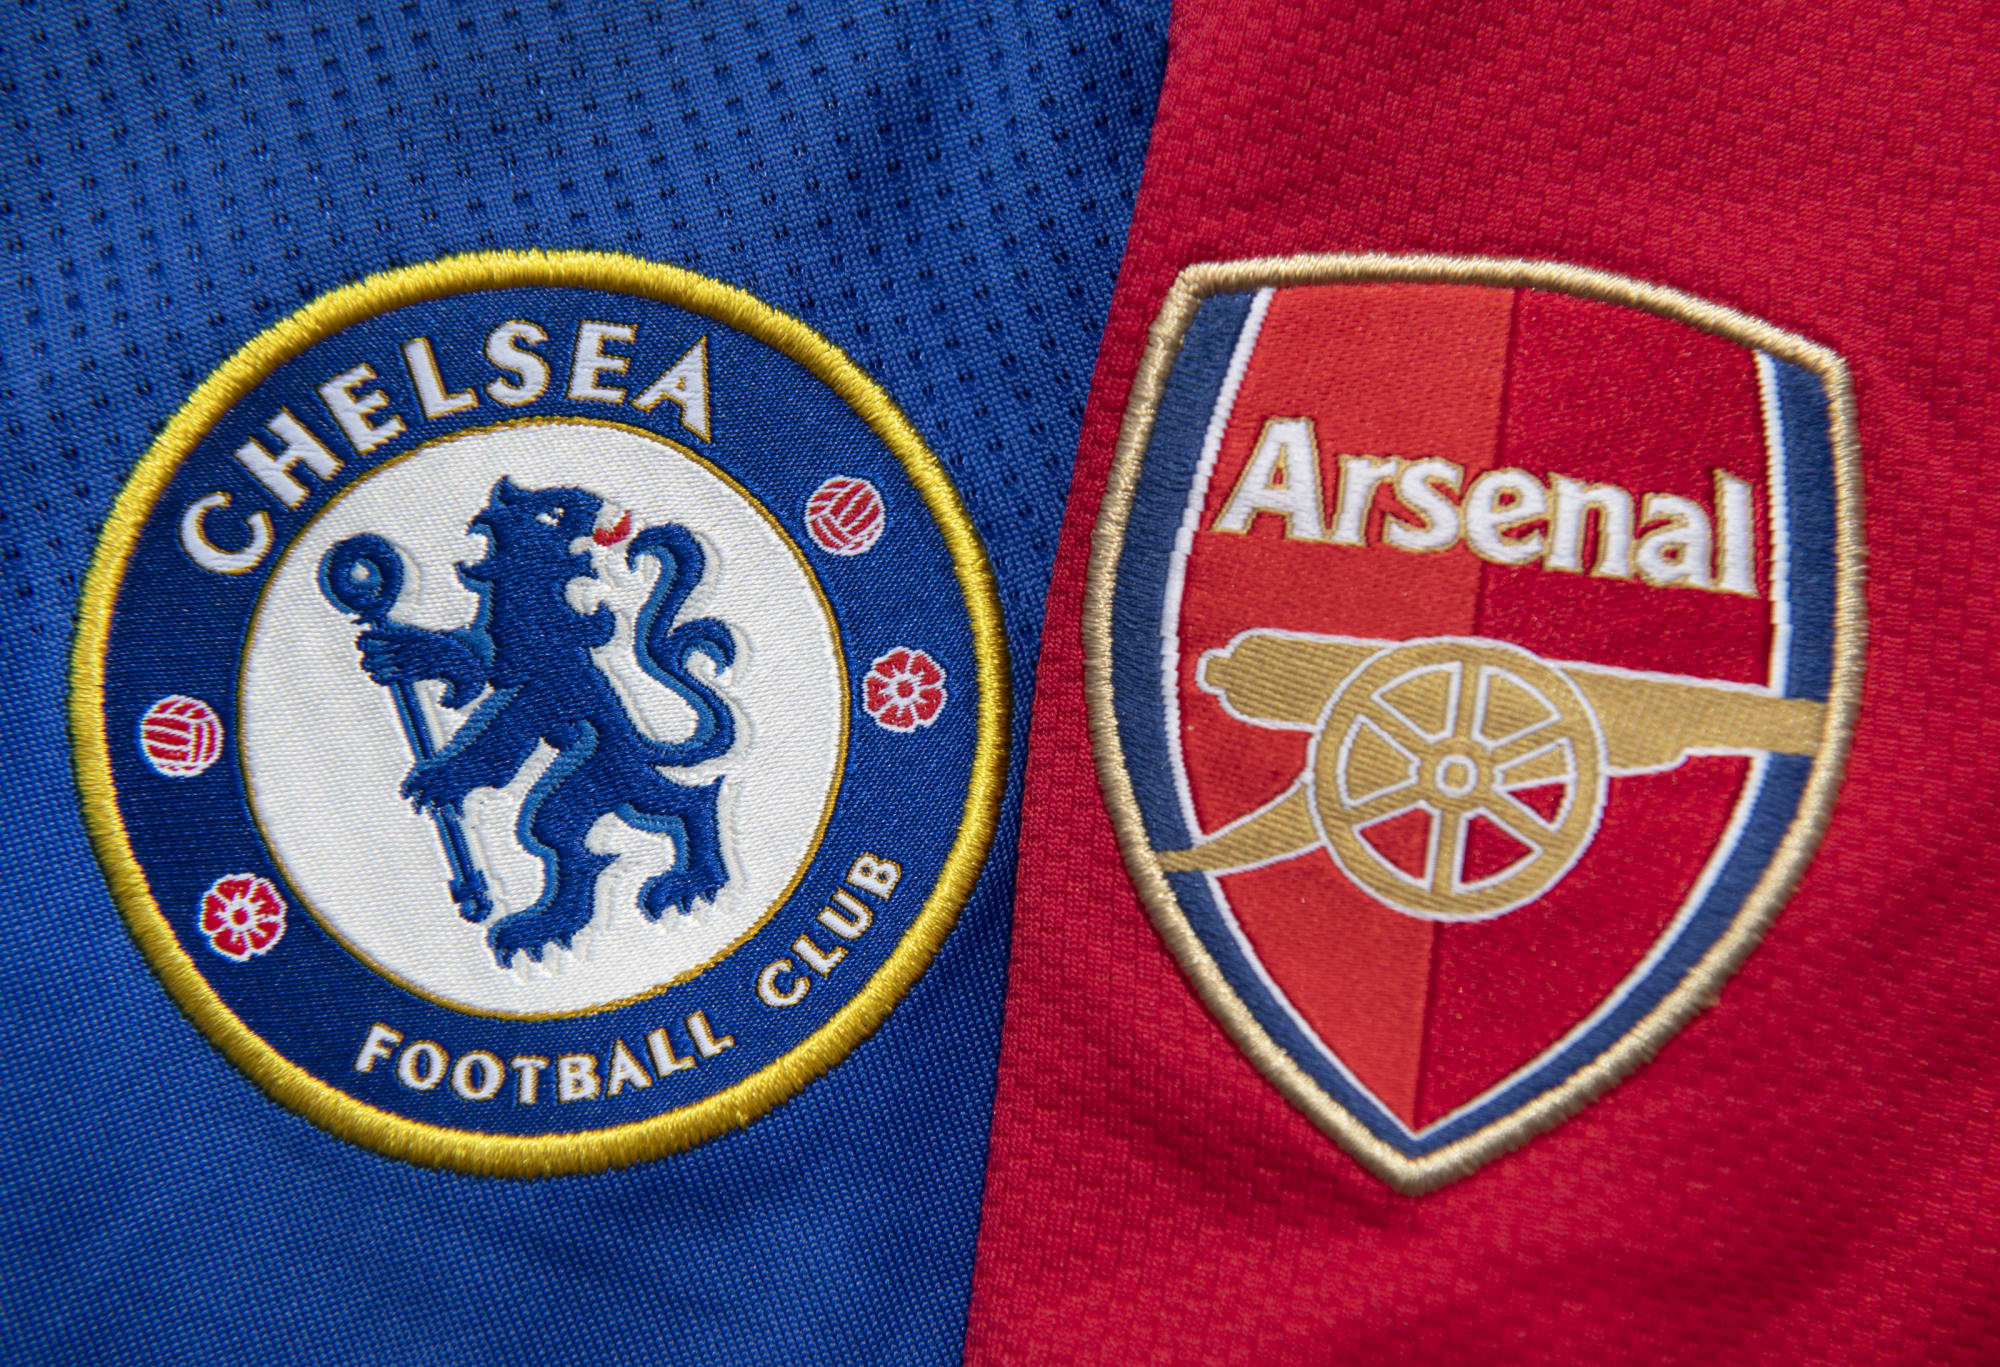 Chelsea vs Arsenal preview Wednesdays Premier League clash